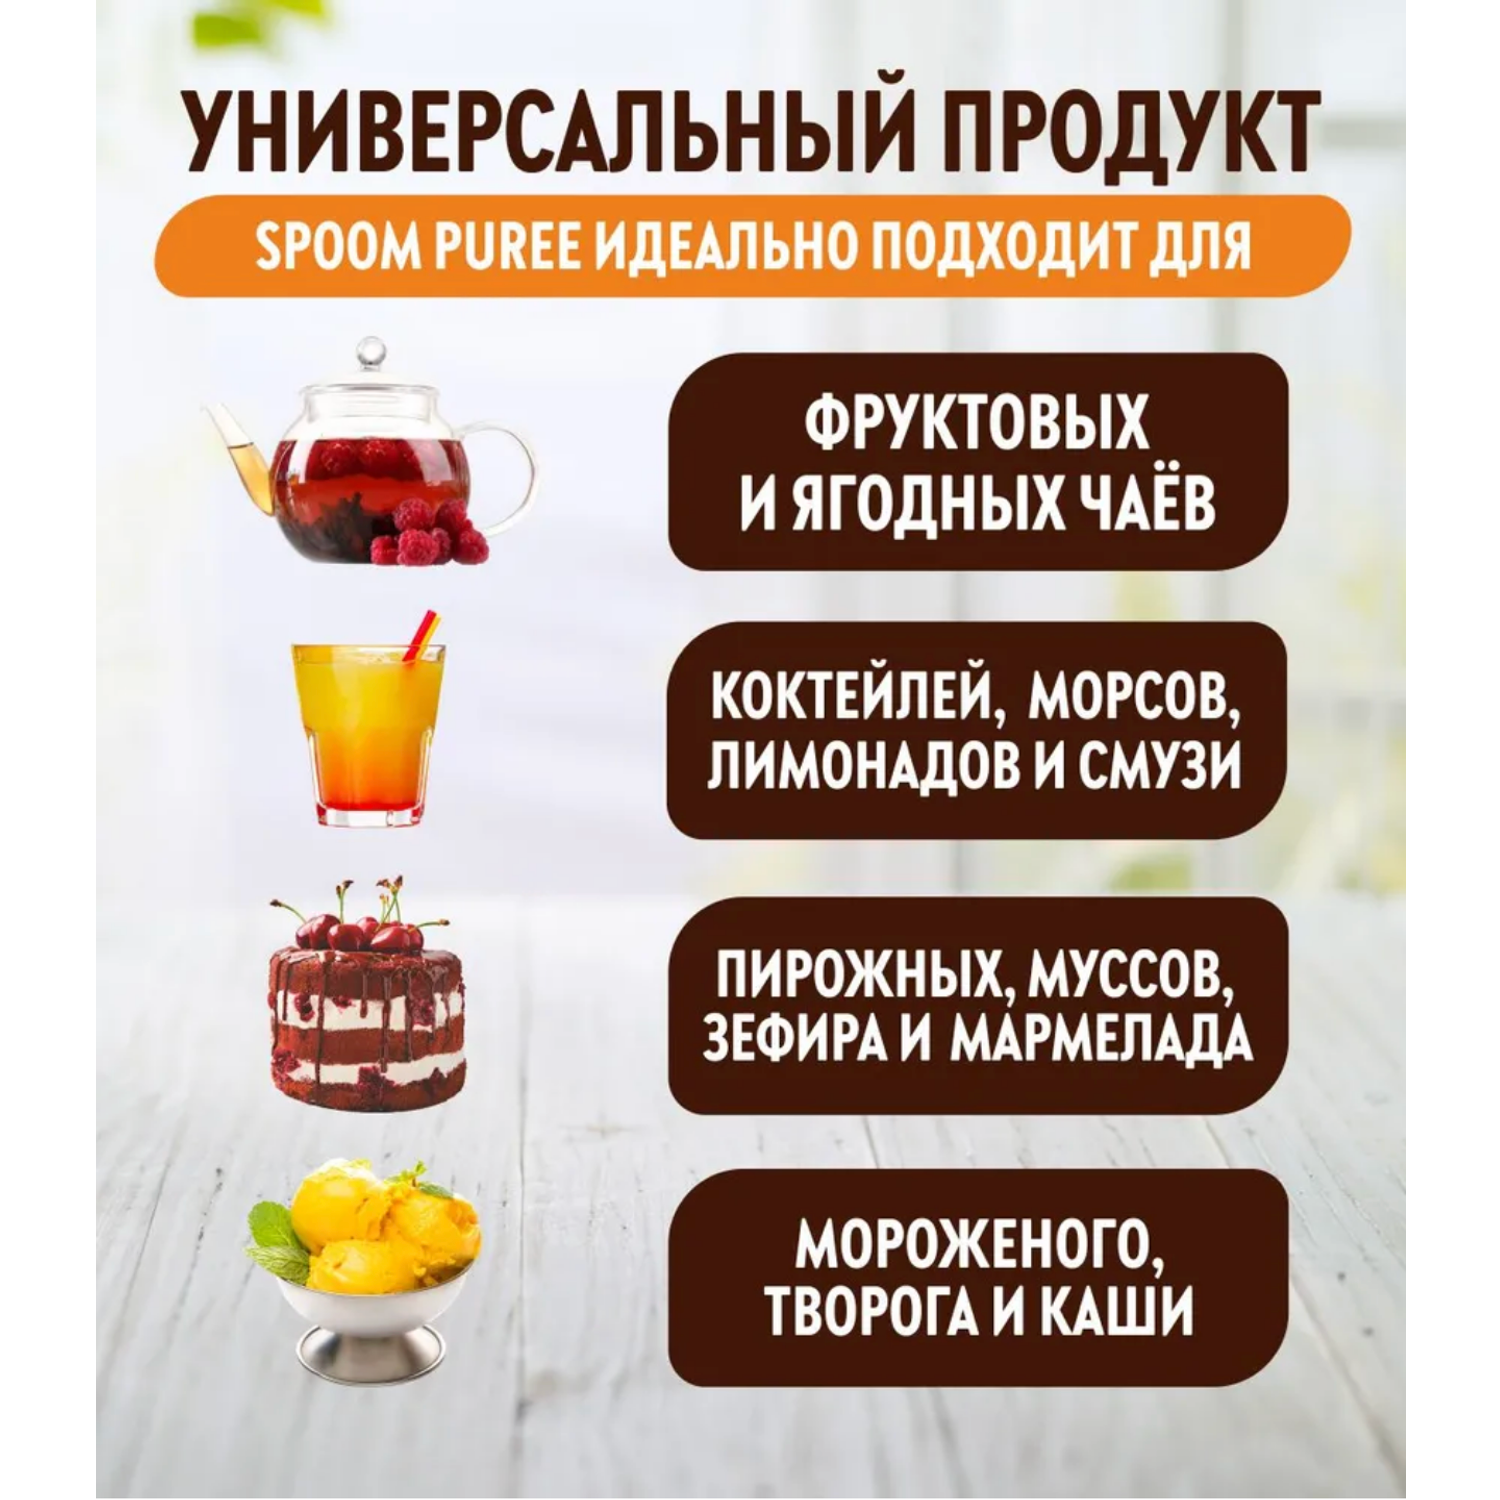 Натуральный концентрат SPOOM PUREE Кокосовый крем 1кг основа для приготовления напитков и десертов - фото 2